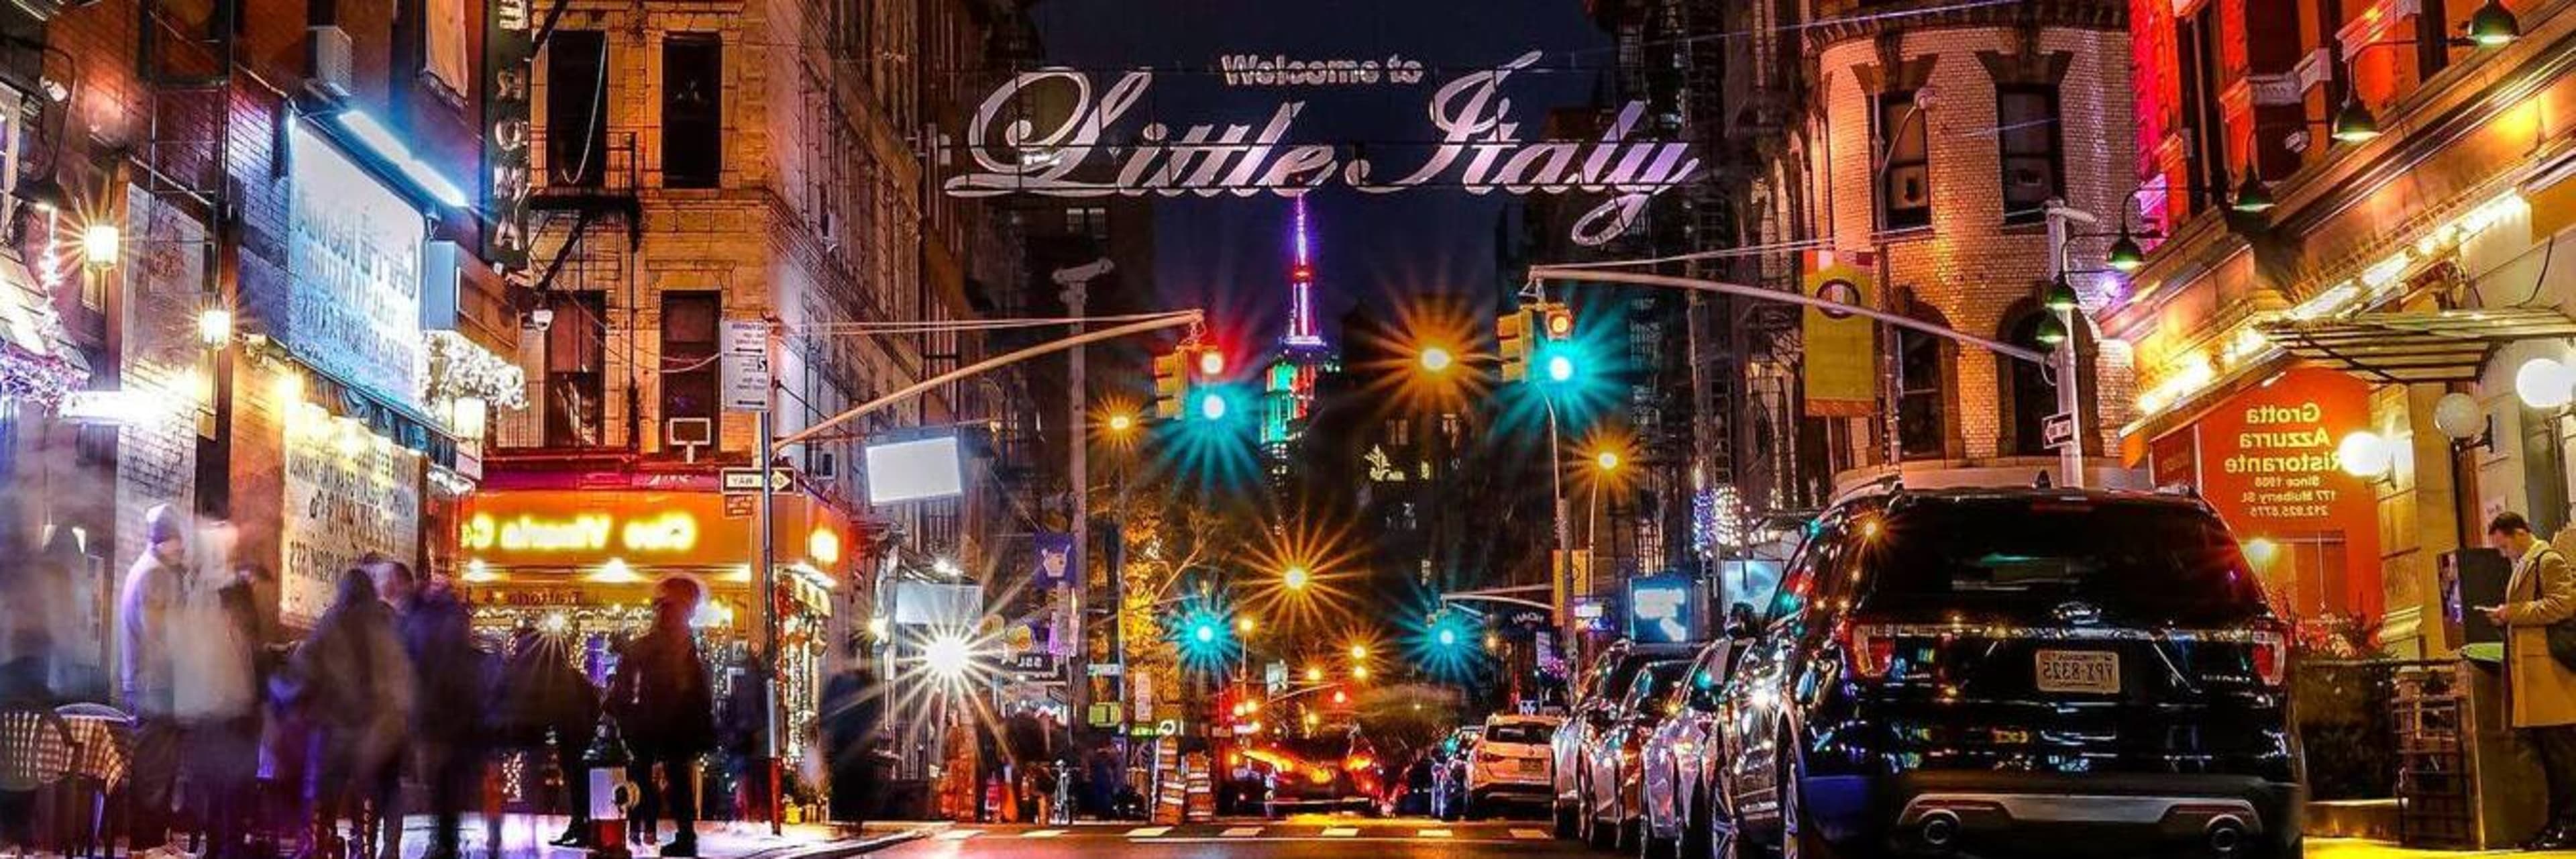 Little Italy in Manhattan.